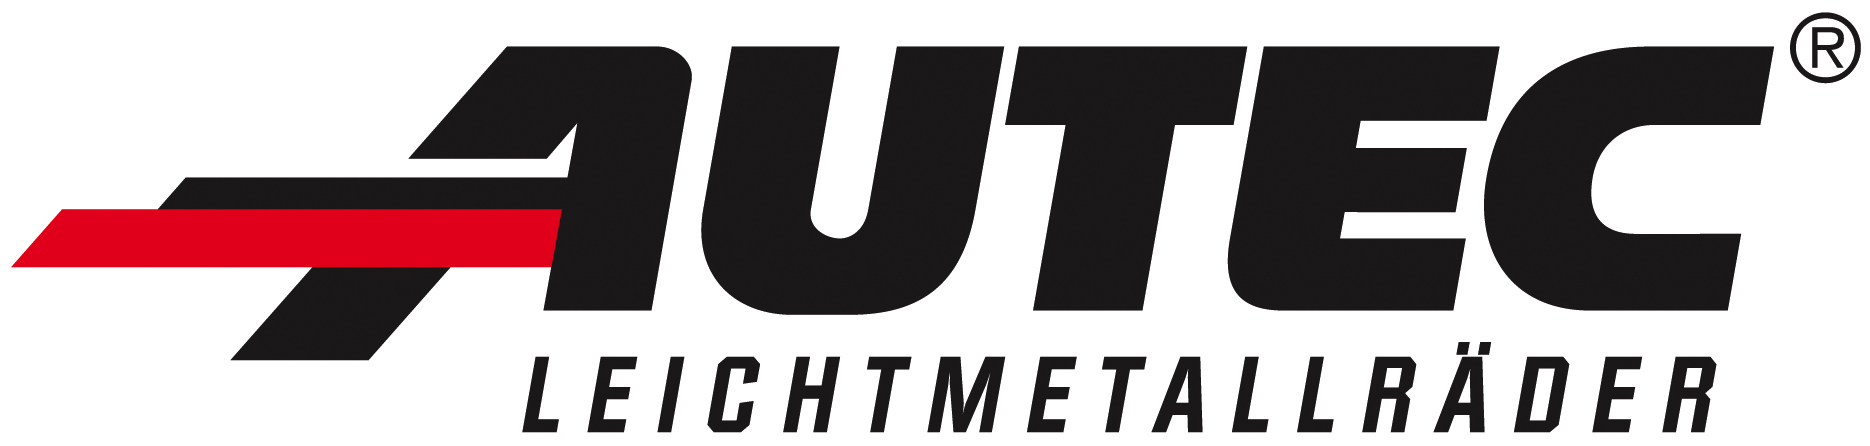 Производитель AUTEC логотип